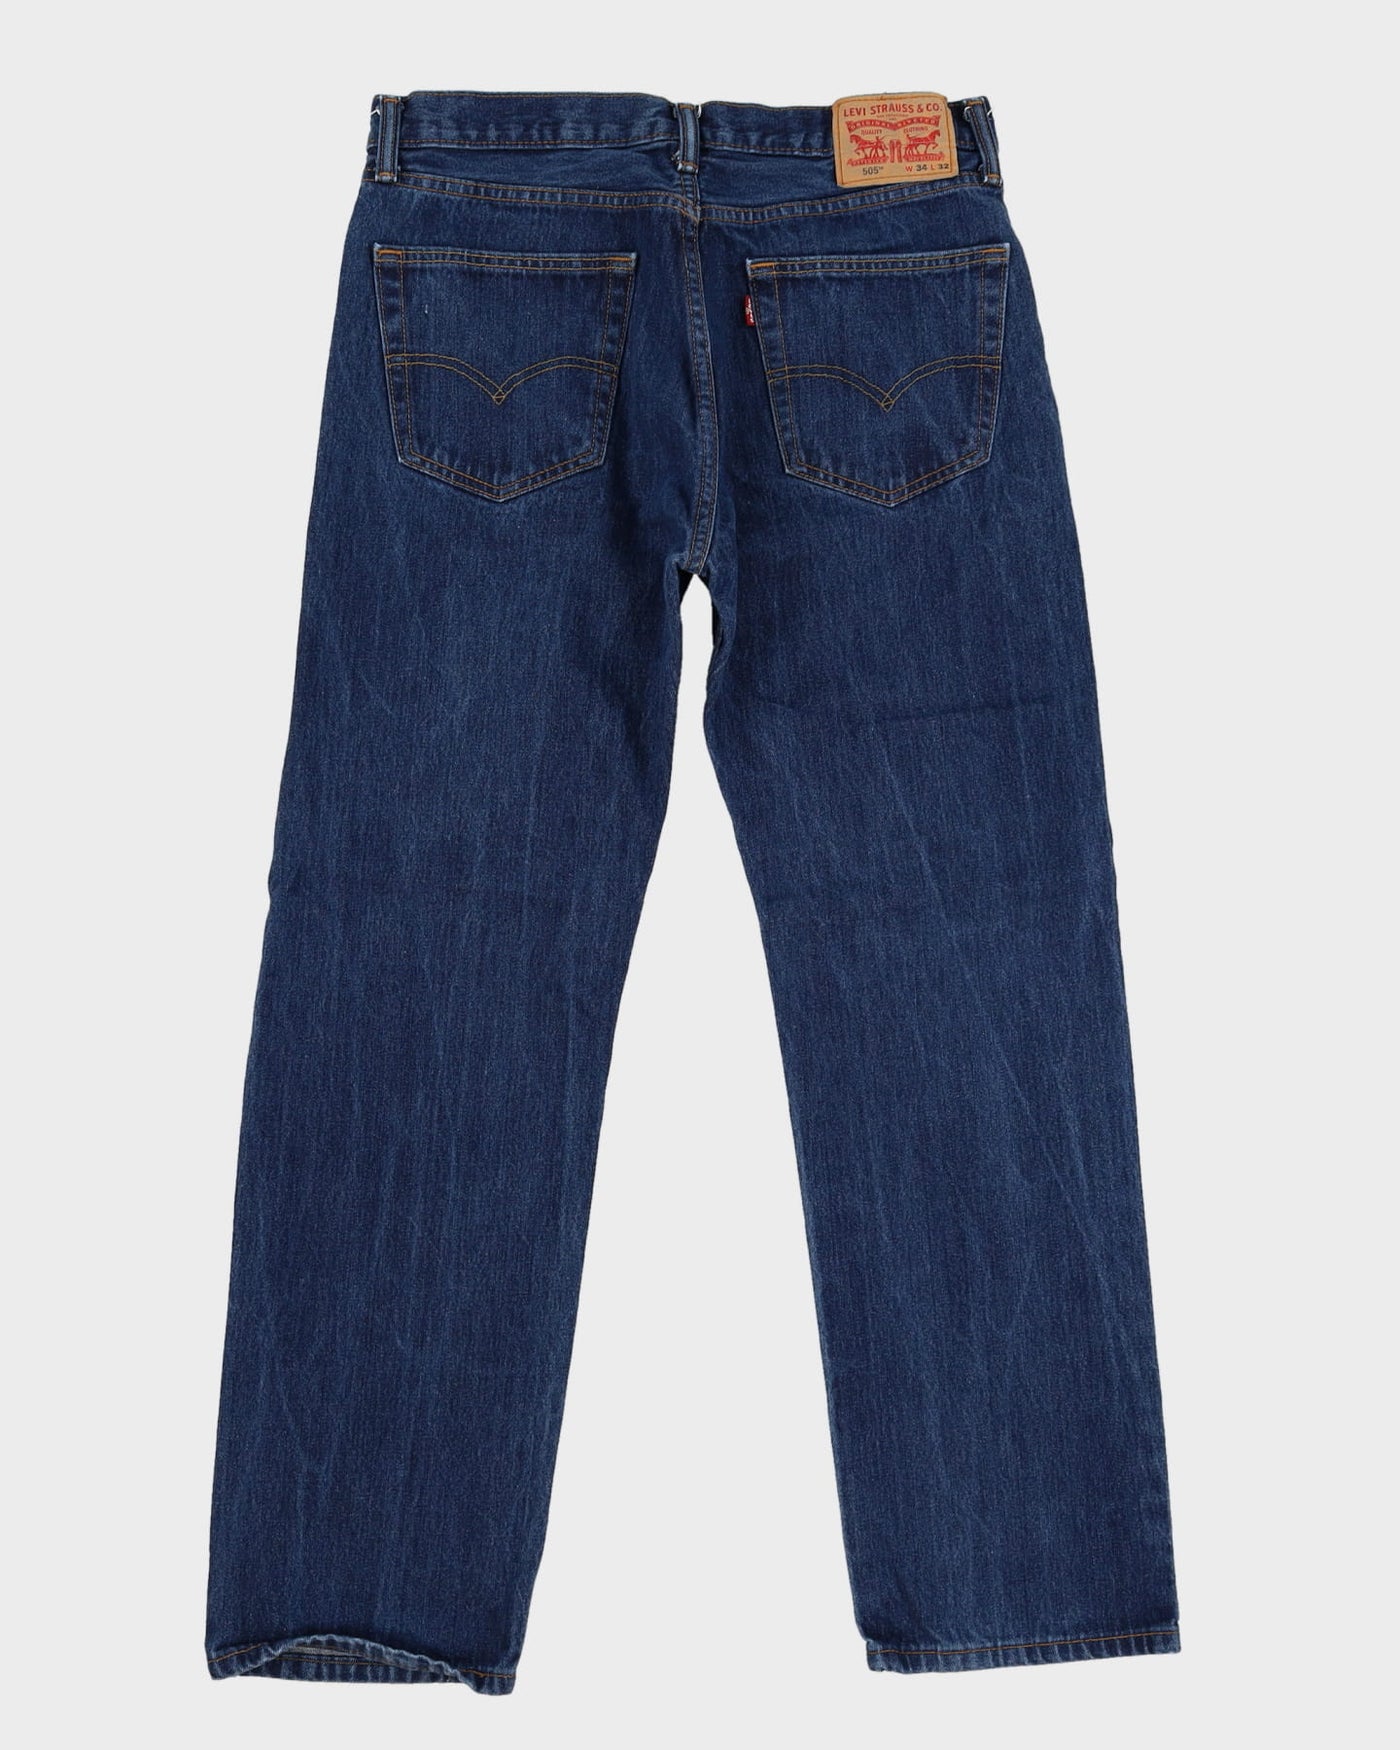 Levi's 505 Blue Jeans - W34 L31